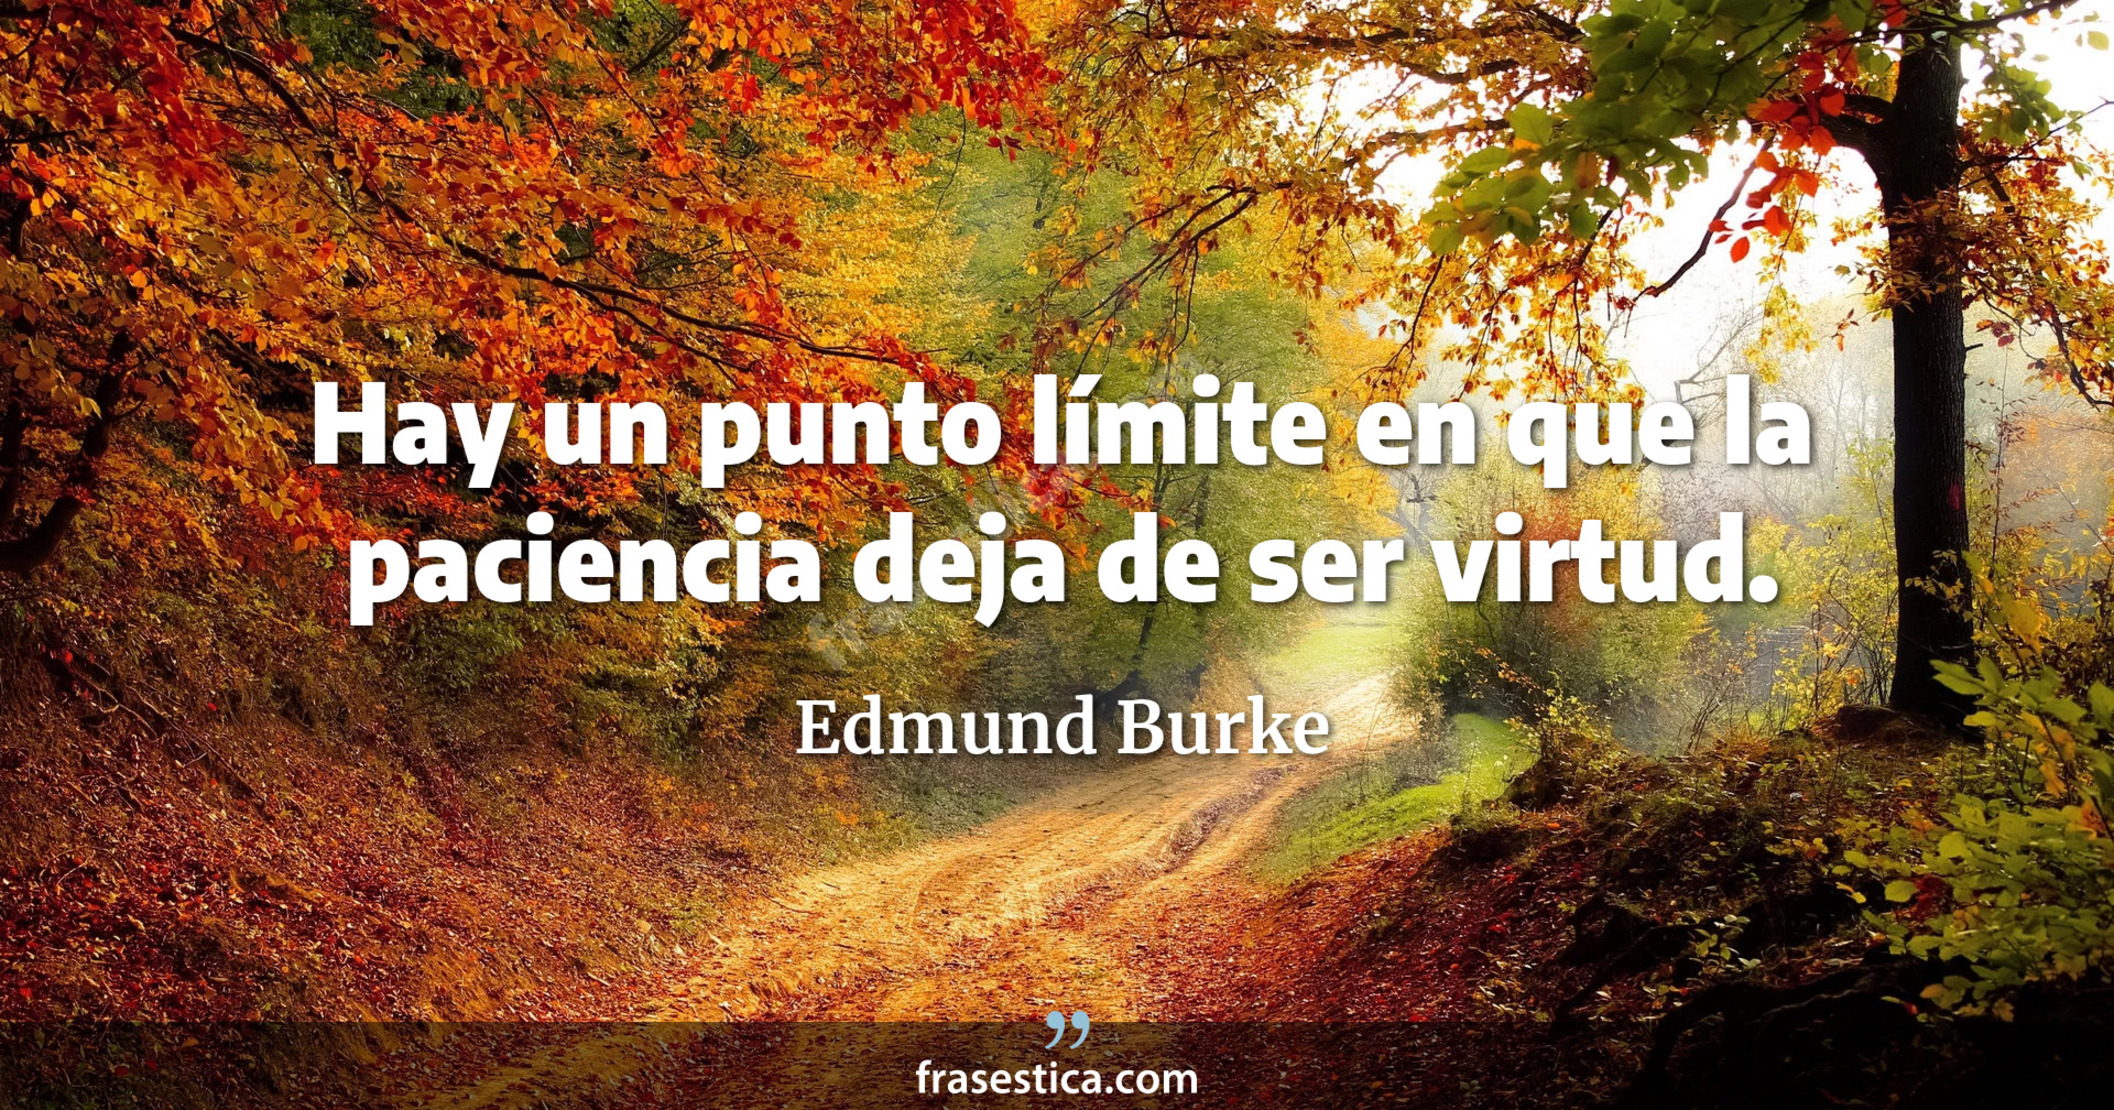 Hay un punto límite en que la paciencia deja de ser virtud. - Edmund Burke